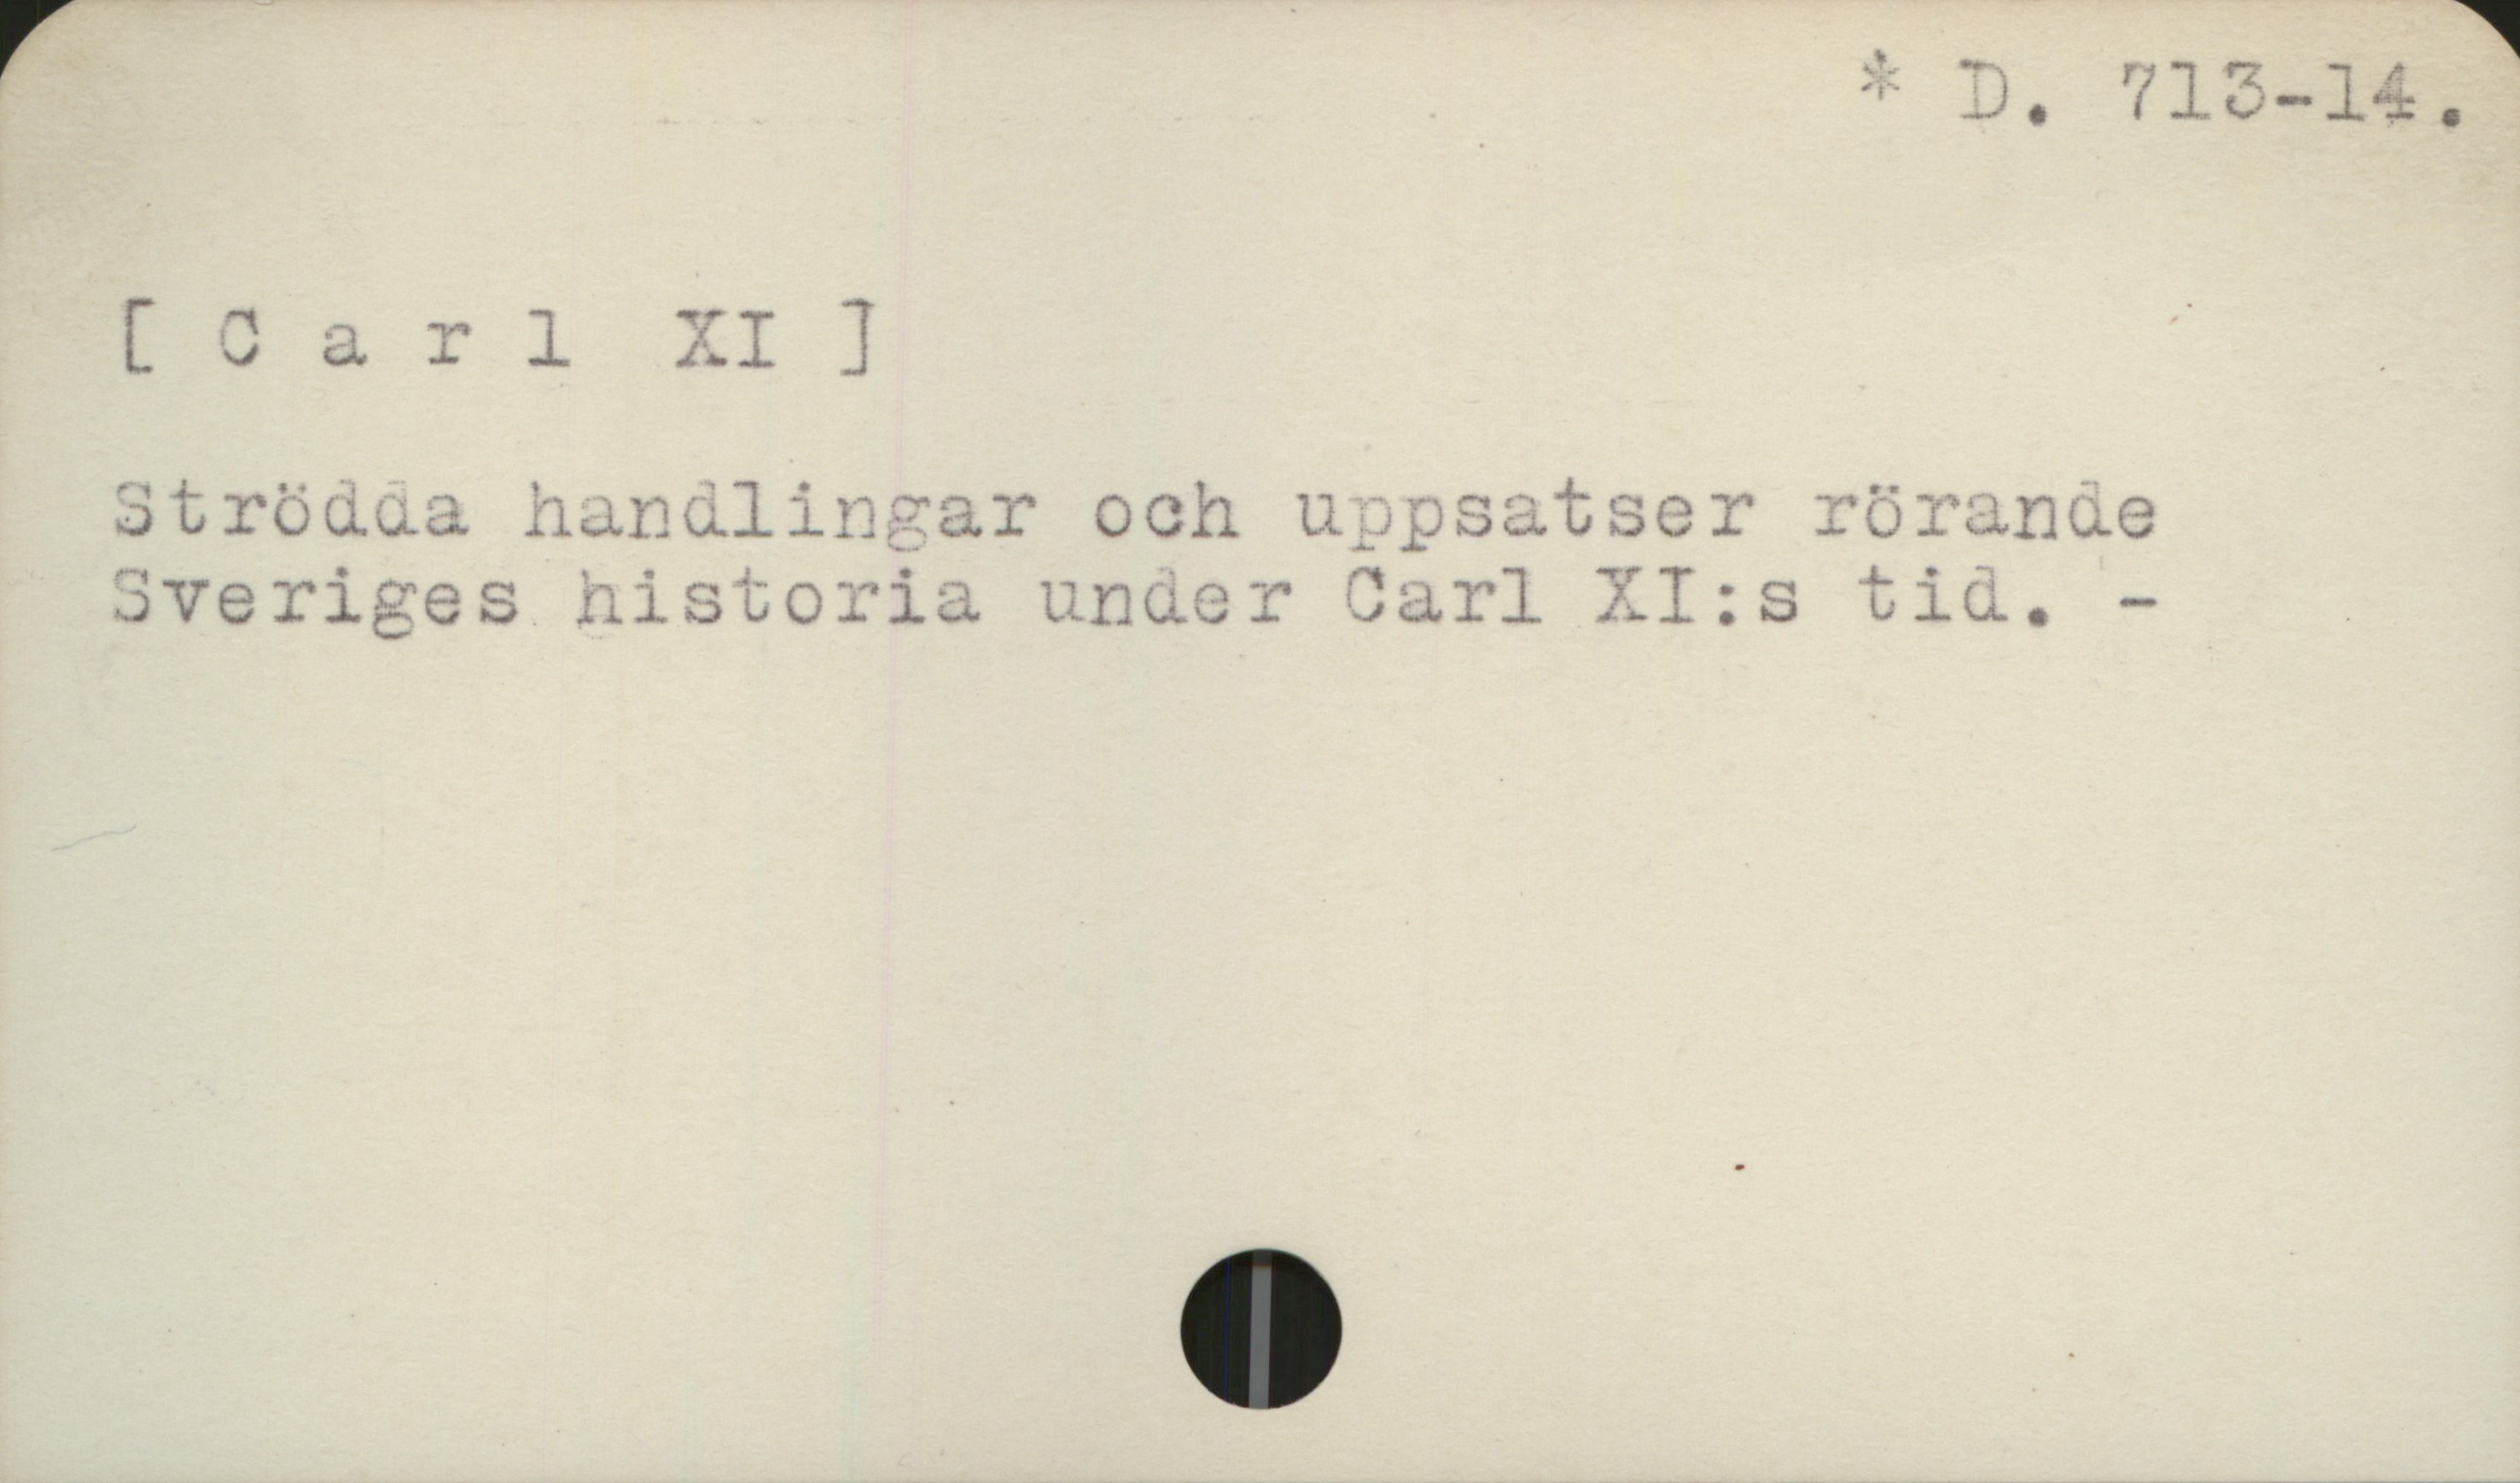  C + D, 718-14,
V ., hod Lt
[ T a T l 72. I ] .
$trödaua hanalincsar och uppsatser röranue
Sveriges nistoria under Carl XI:s tiv. - .

